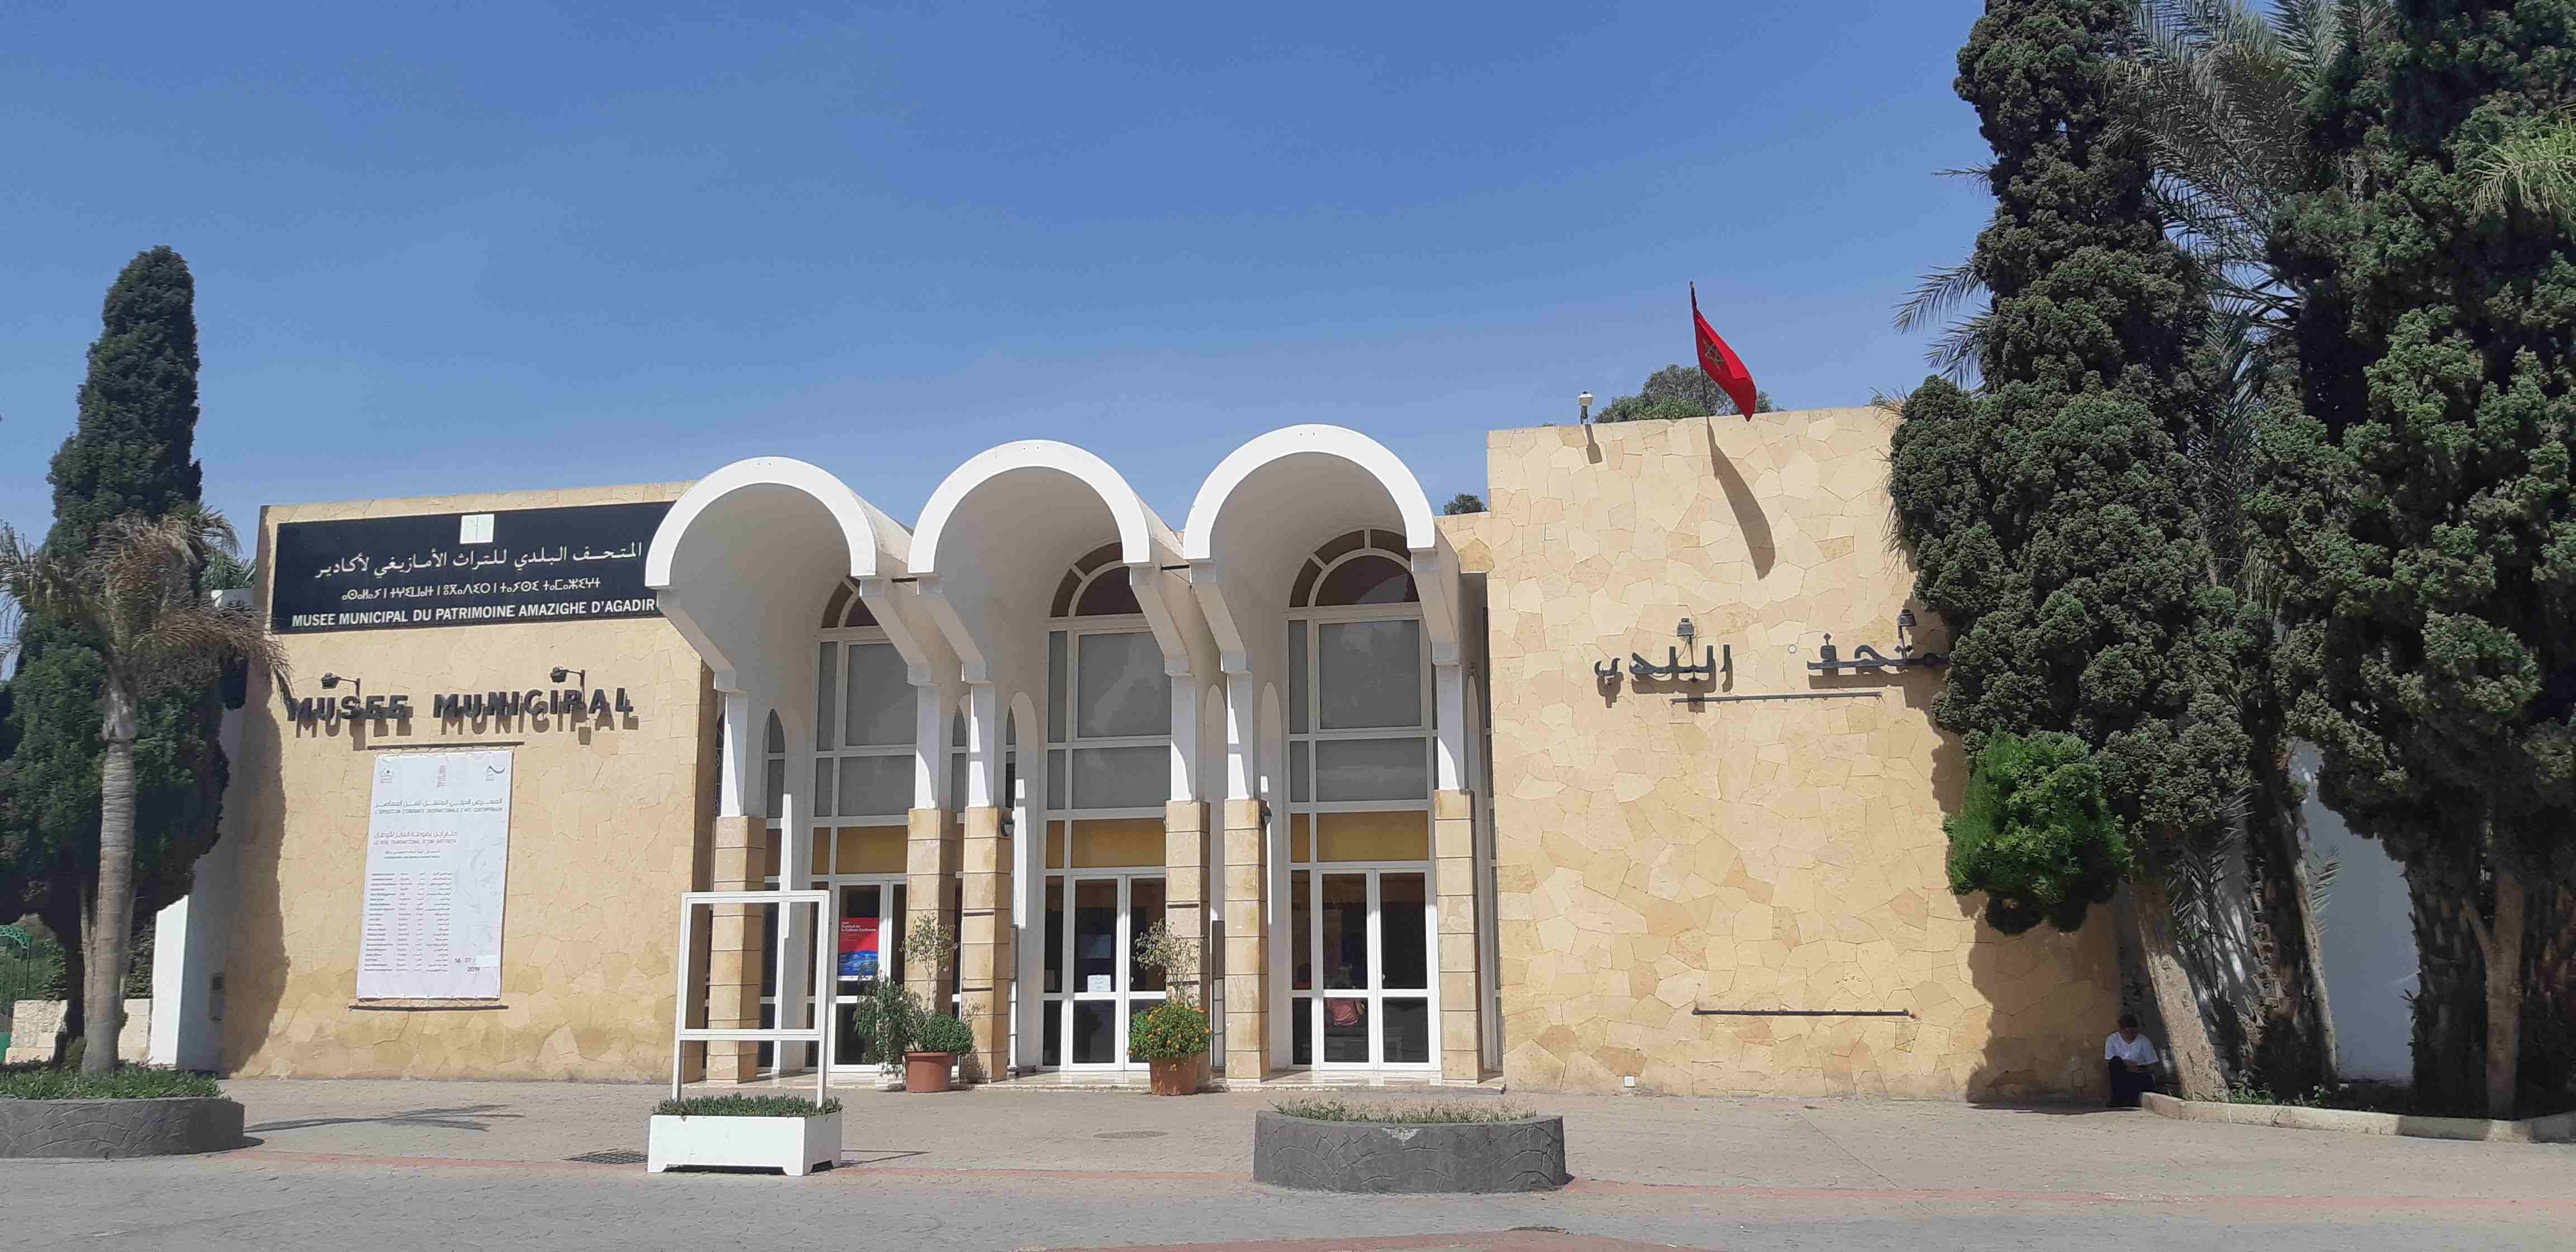 Musée de patrimoine Amazigh